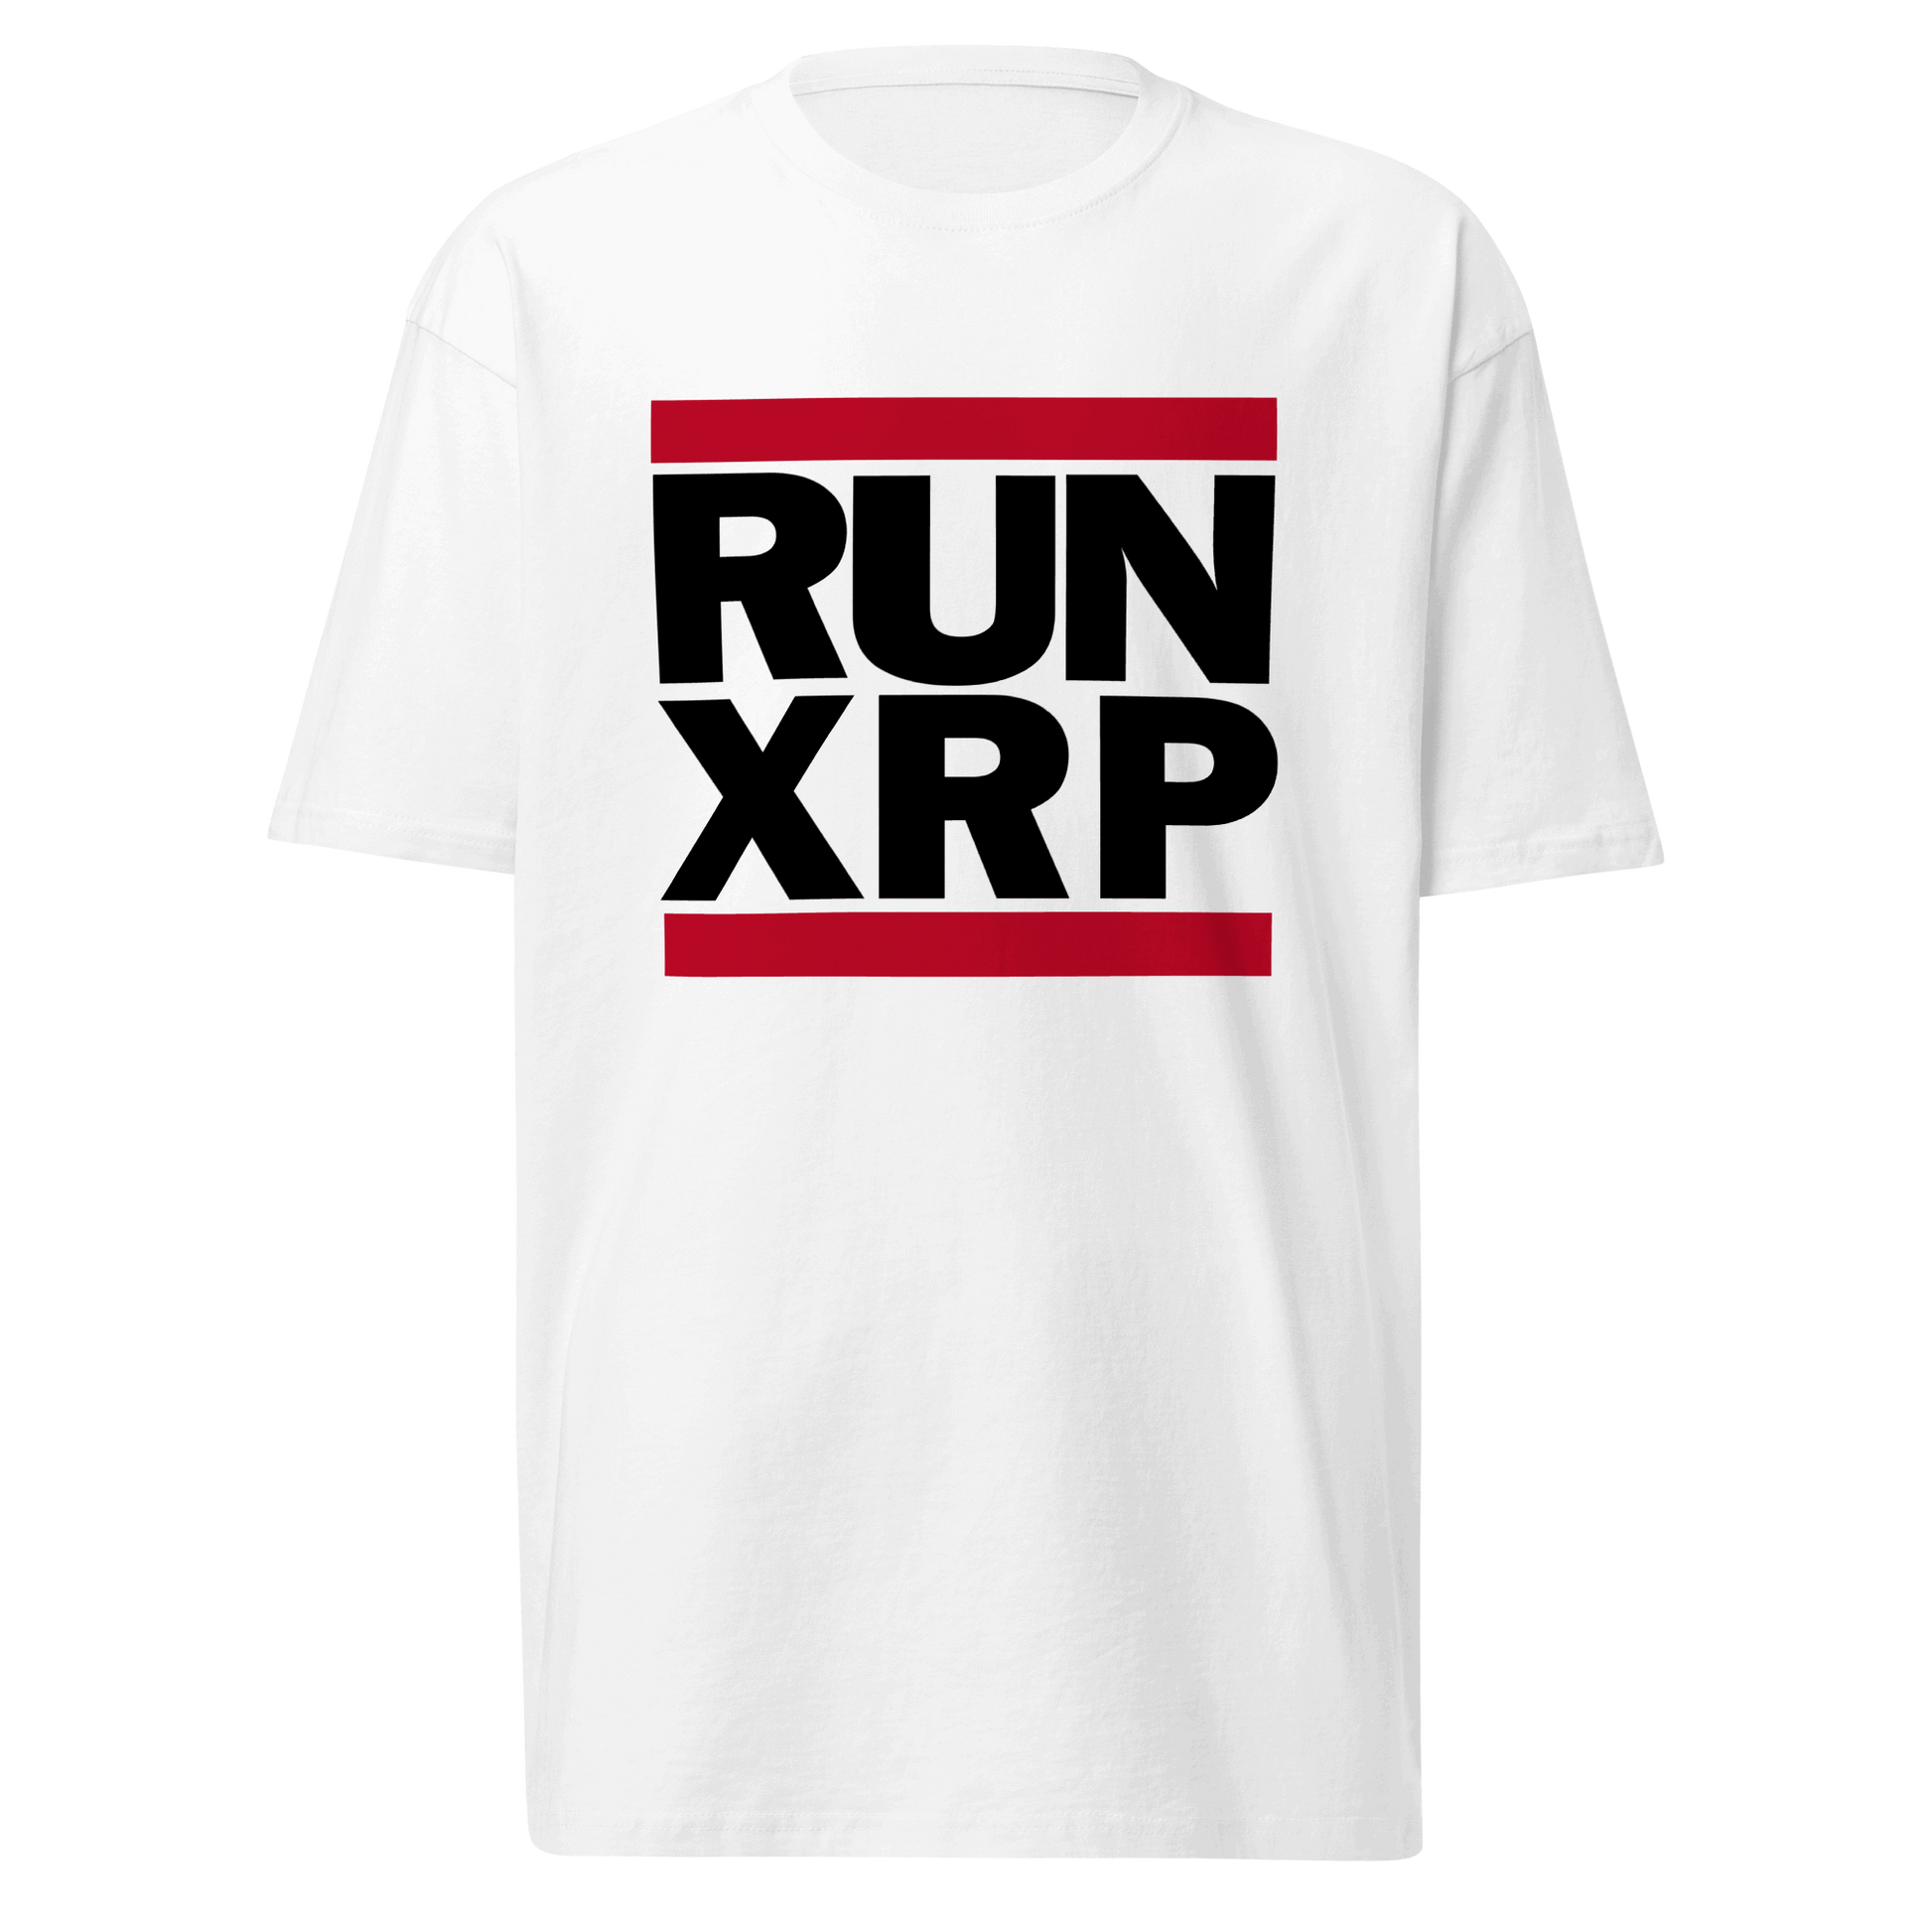 RUN XRP - White Men’s premium heavyweight tee